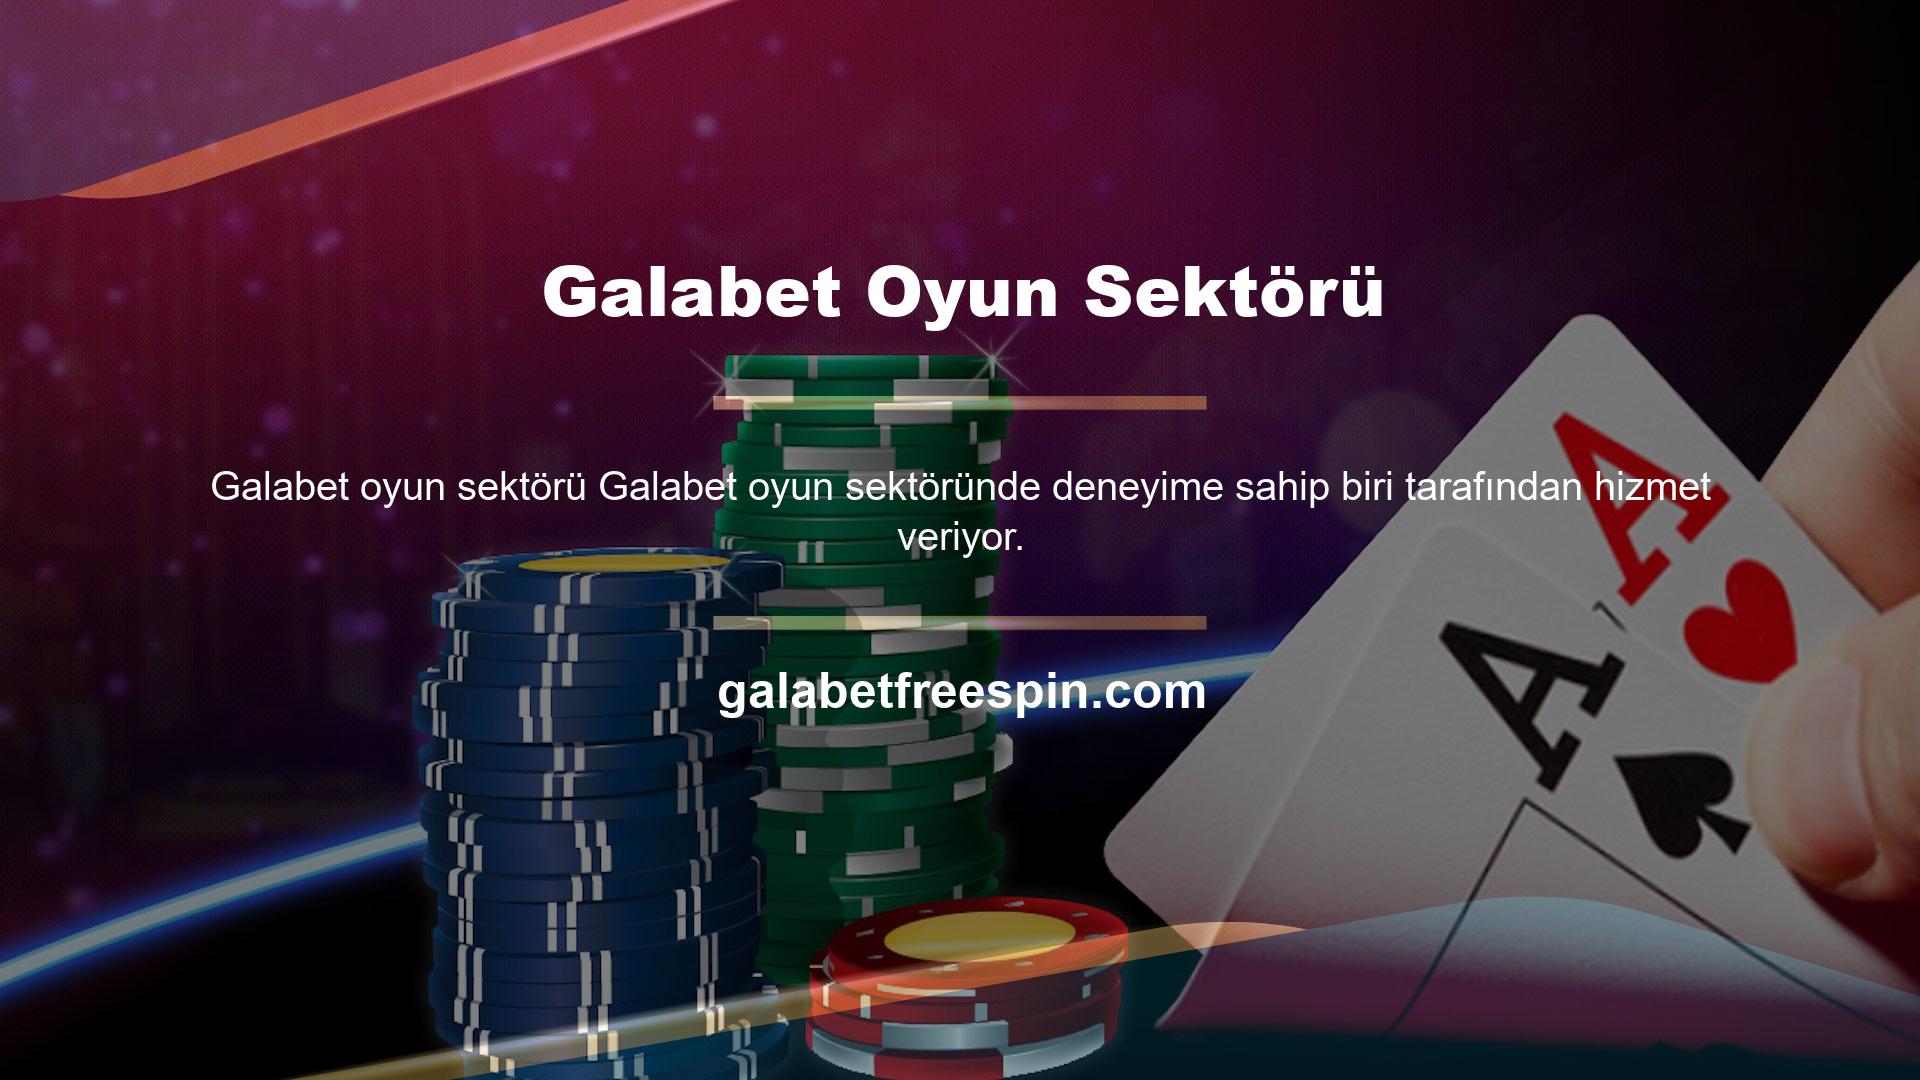 Galabet, dünyanın birçok ülkesinde binlerce kişiye bahis imkanı sağlamakta ve kullanıcılarına canlı bahis seçenekleri sunmaktadır